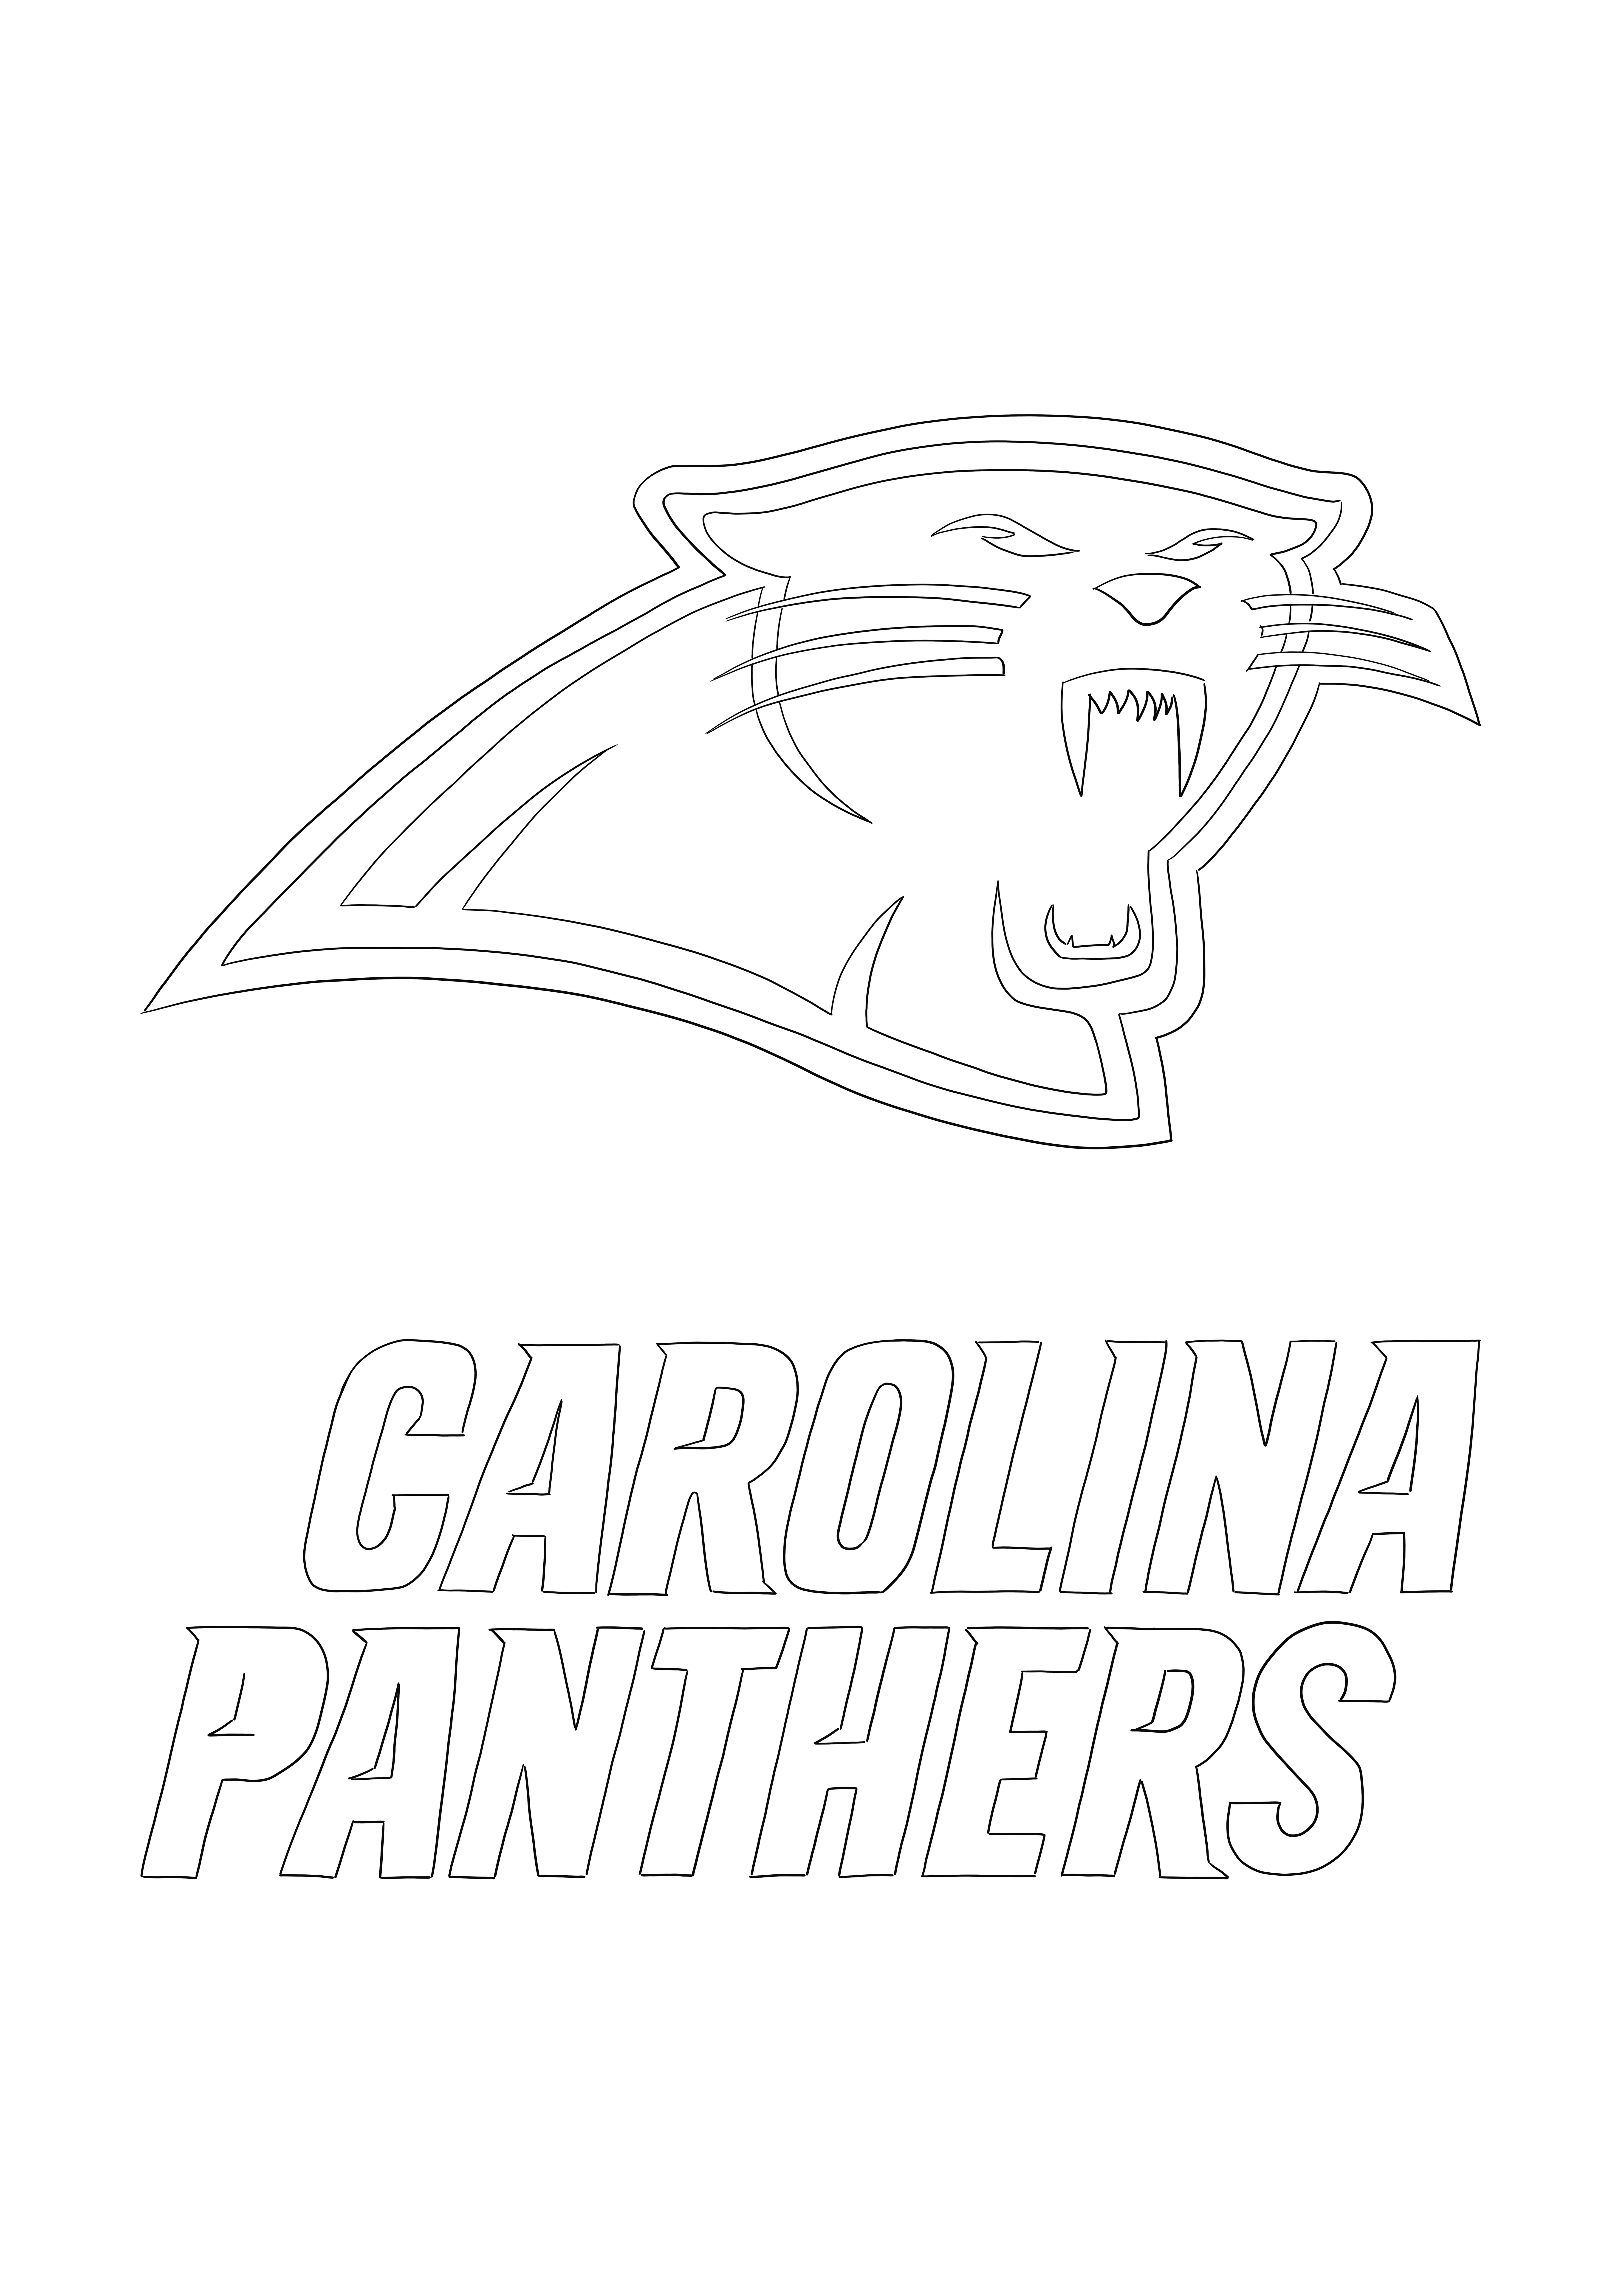 Carolina Panthers Logo zum kostenlosen Ausdrucken zum Ausmalen für alle, die NFL lieben